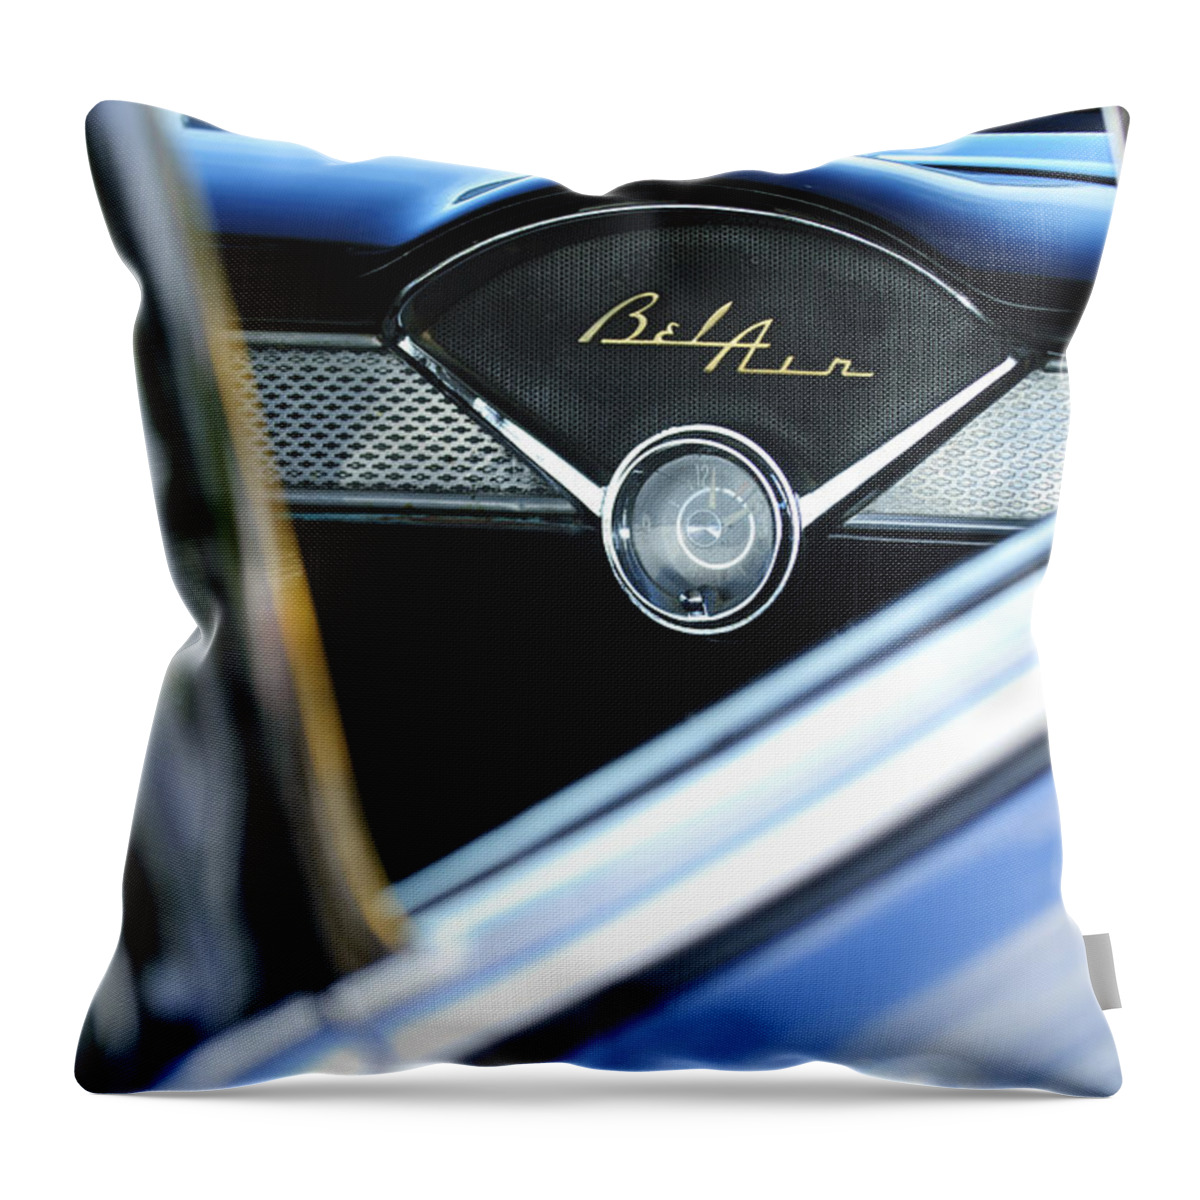 Chevrolet Belair Throw Pillow featuring the photograph Chevrolet Belair Dash Clock by Jill Reger